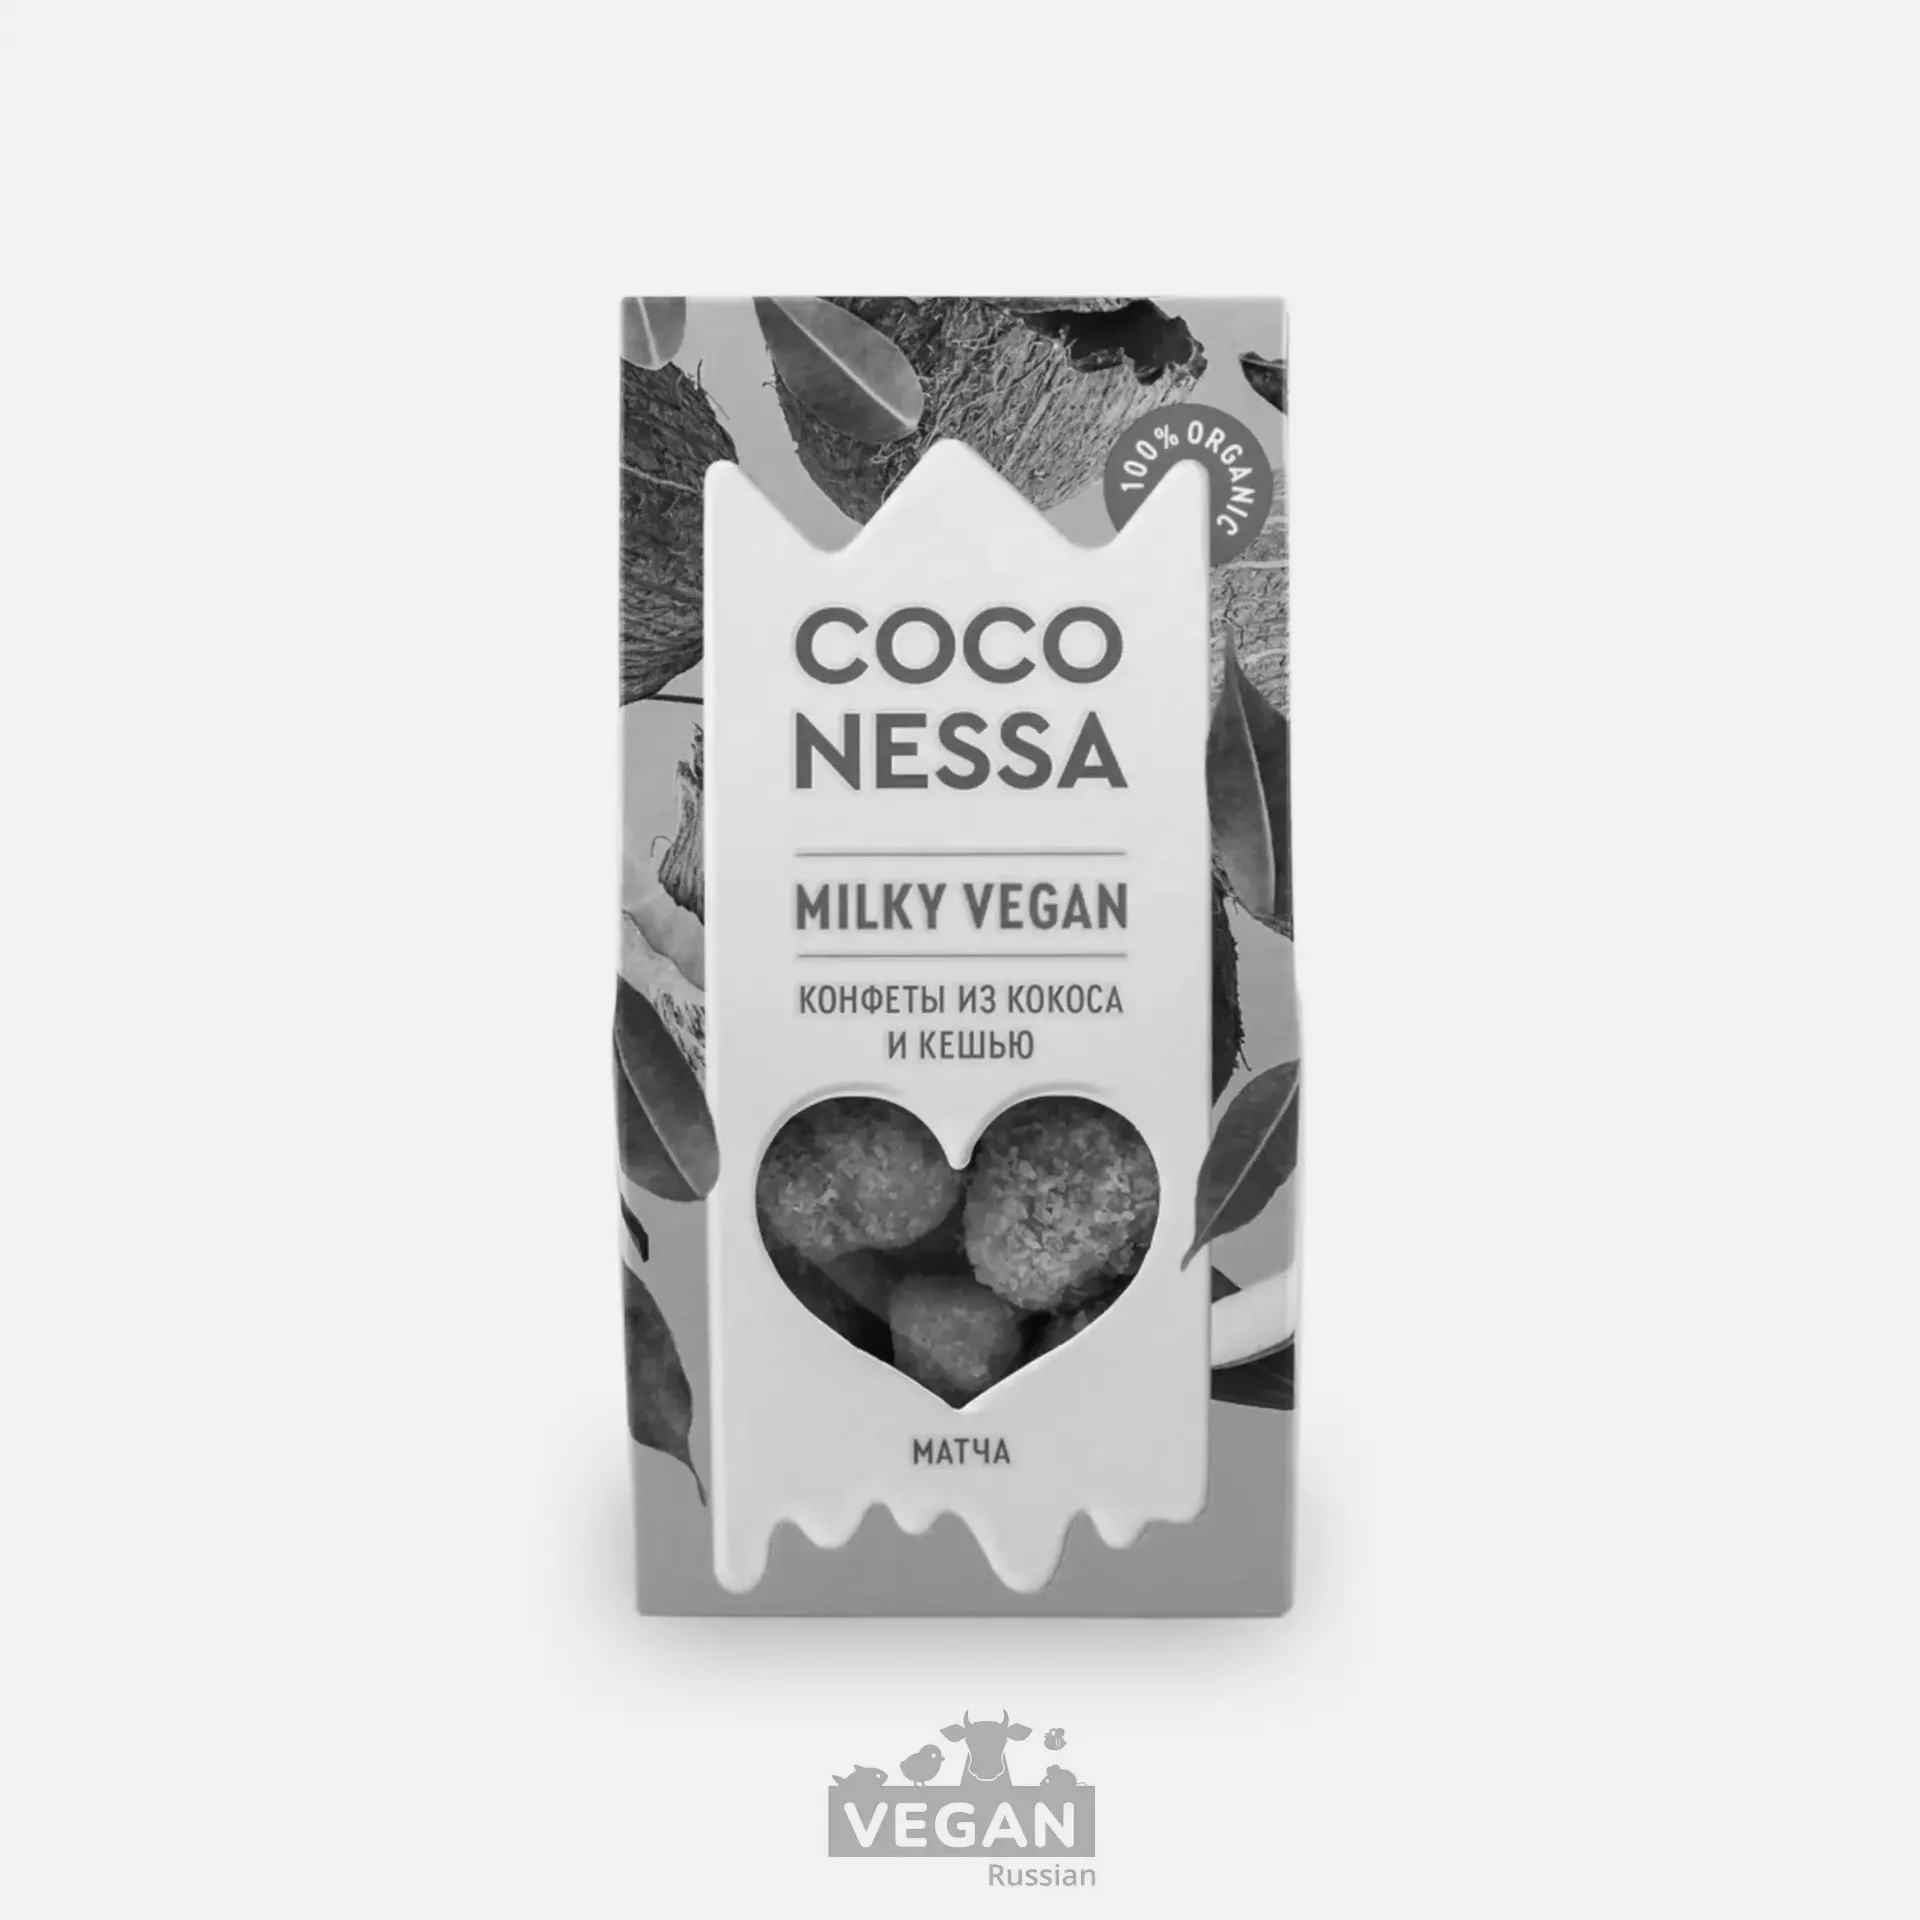 Архив: Конфеты кокосовые с зелёным чаем матча Milky vegan Coconessa 90 г